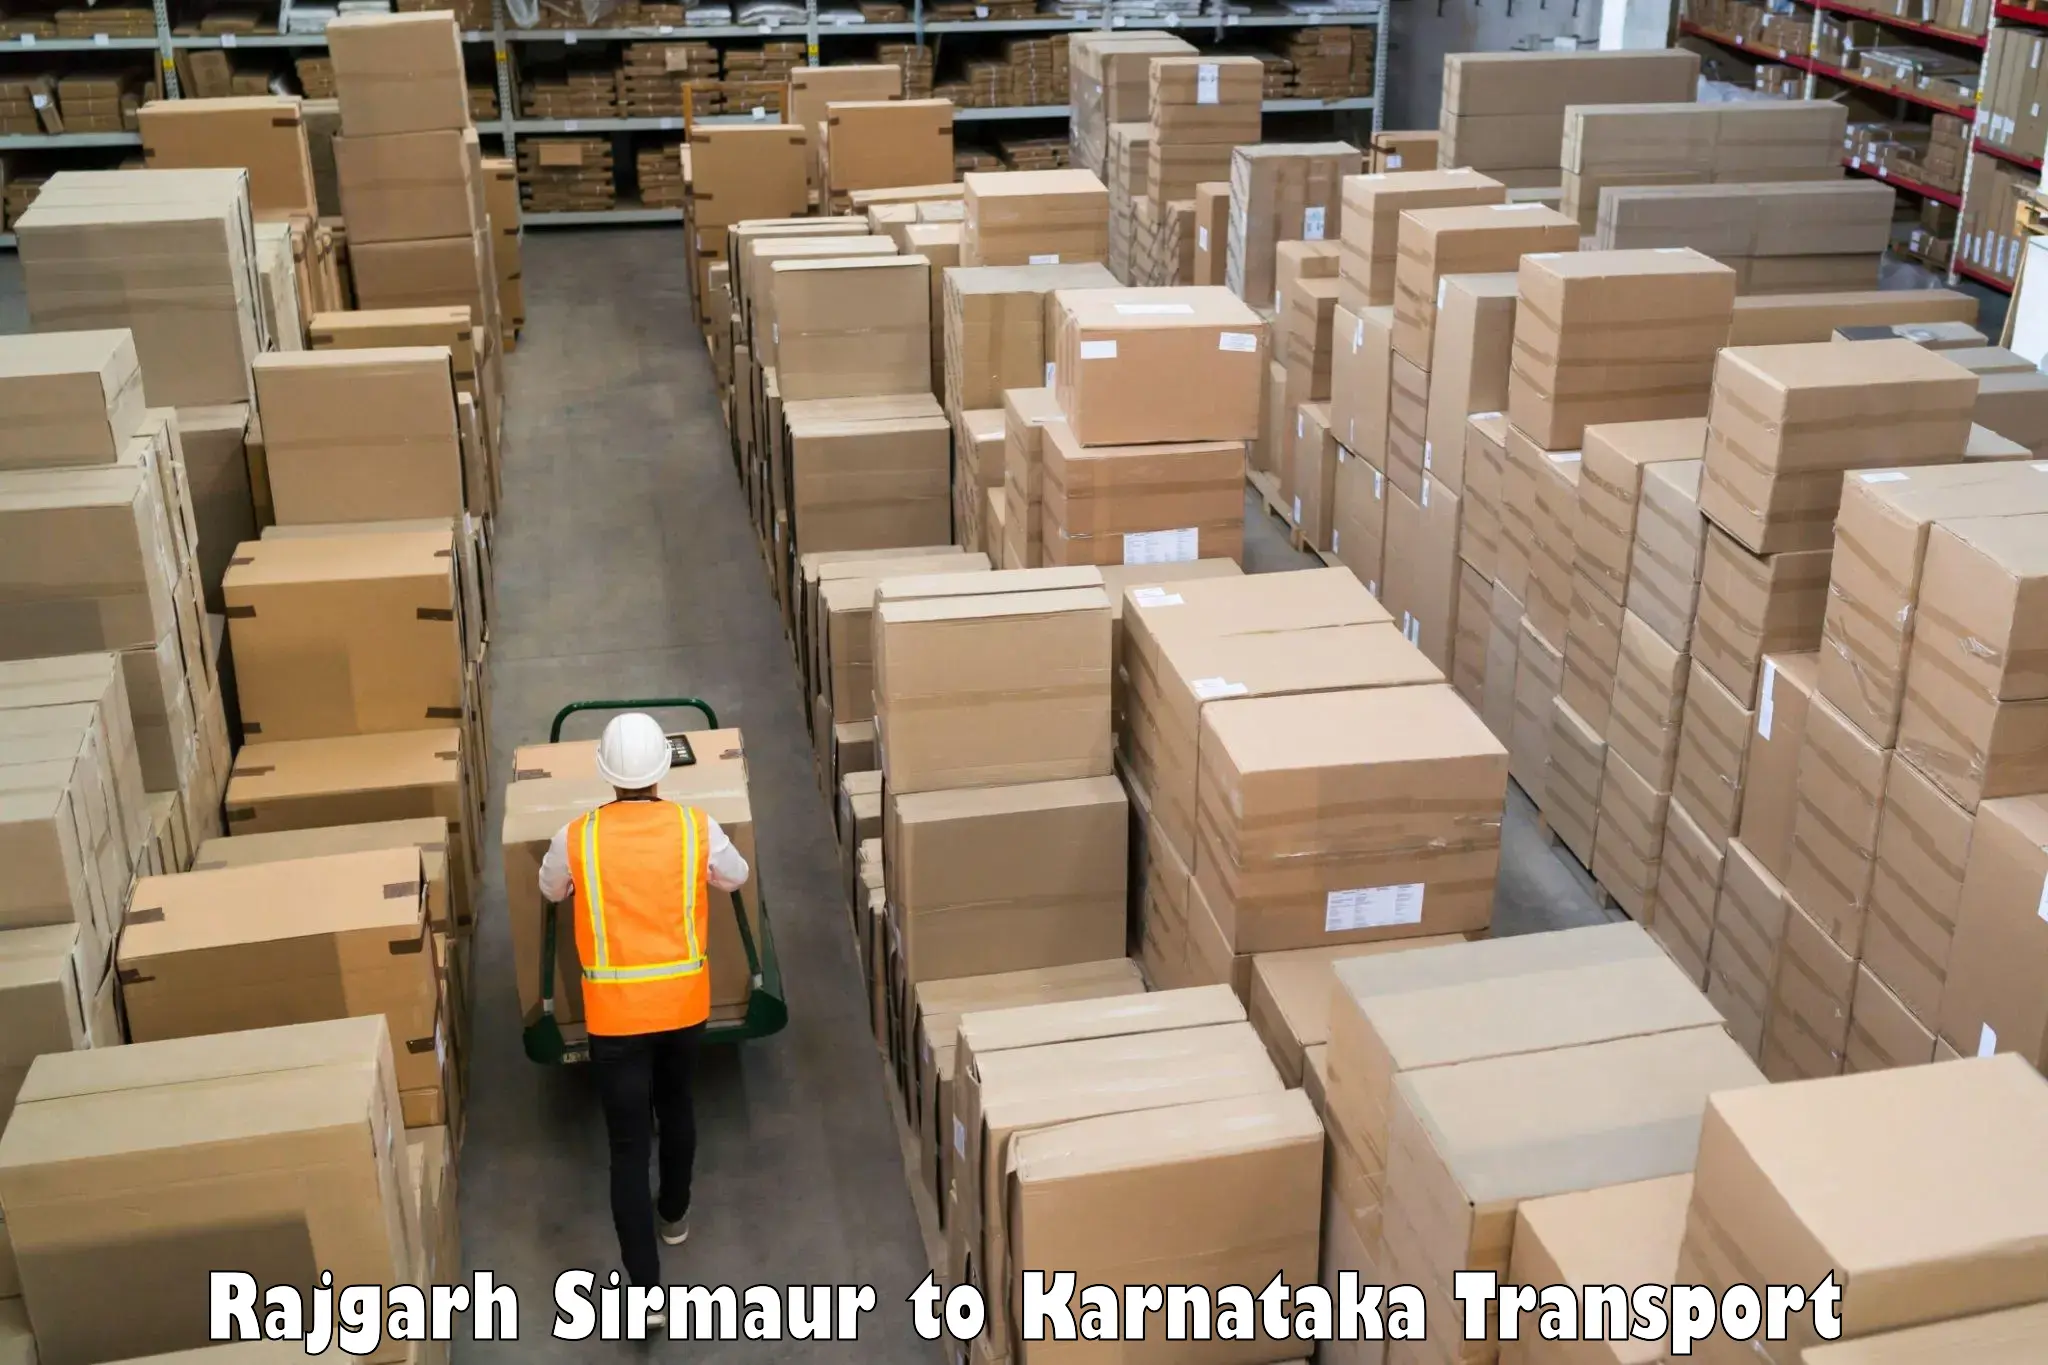 Furniture transport service Rajgarh Sirmaur to NITTE Mangaluru